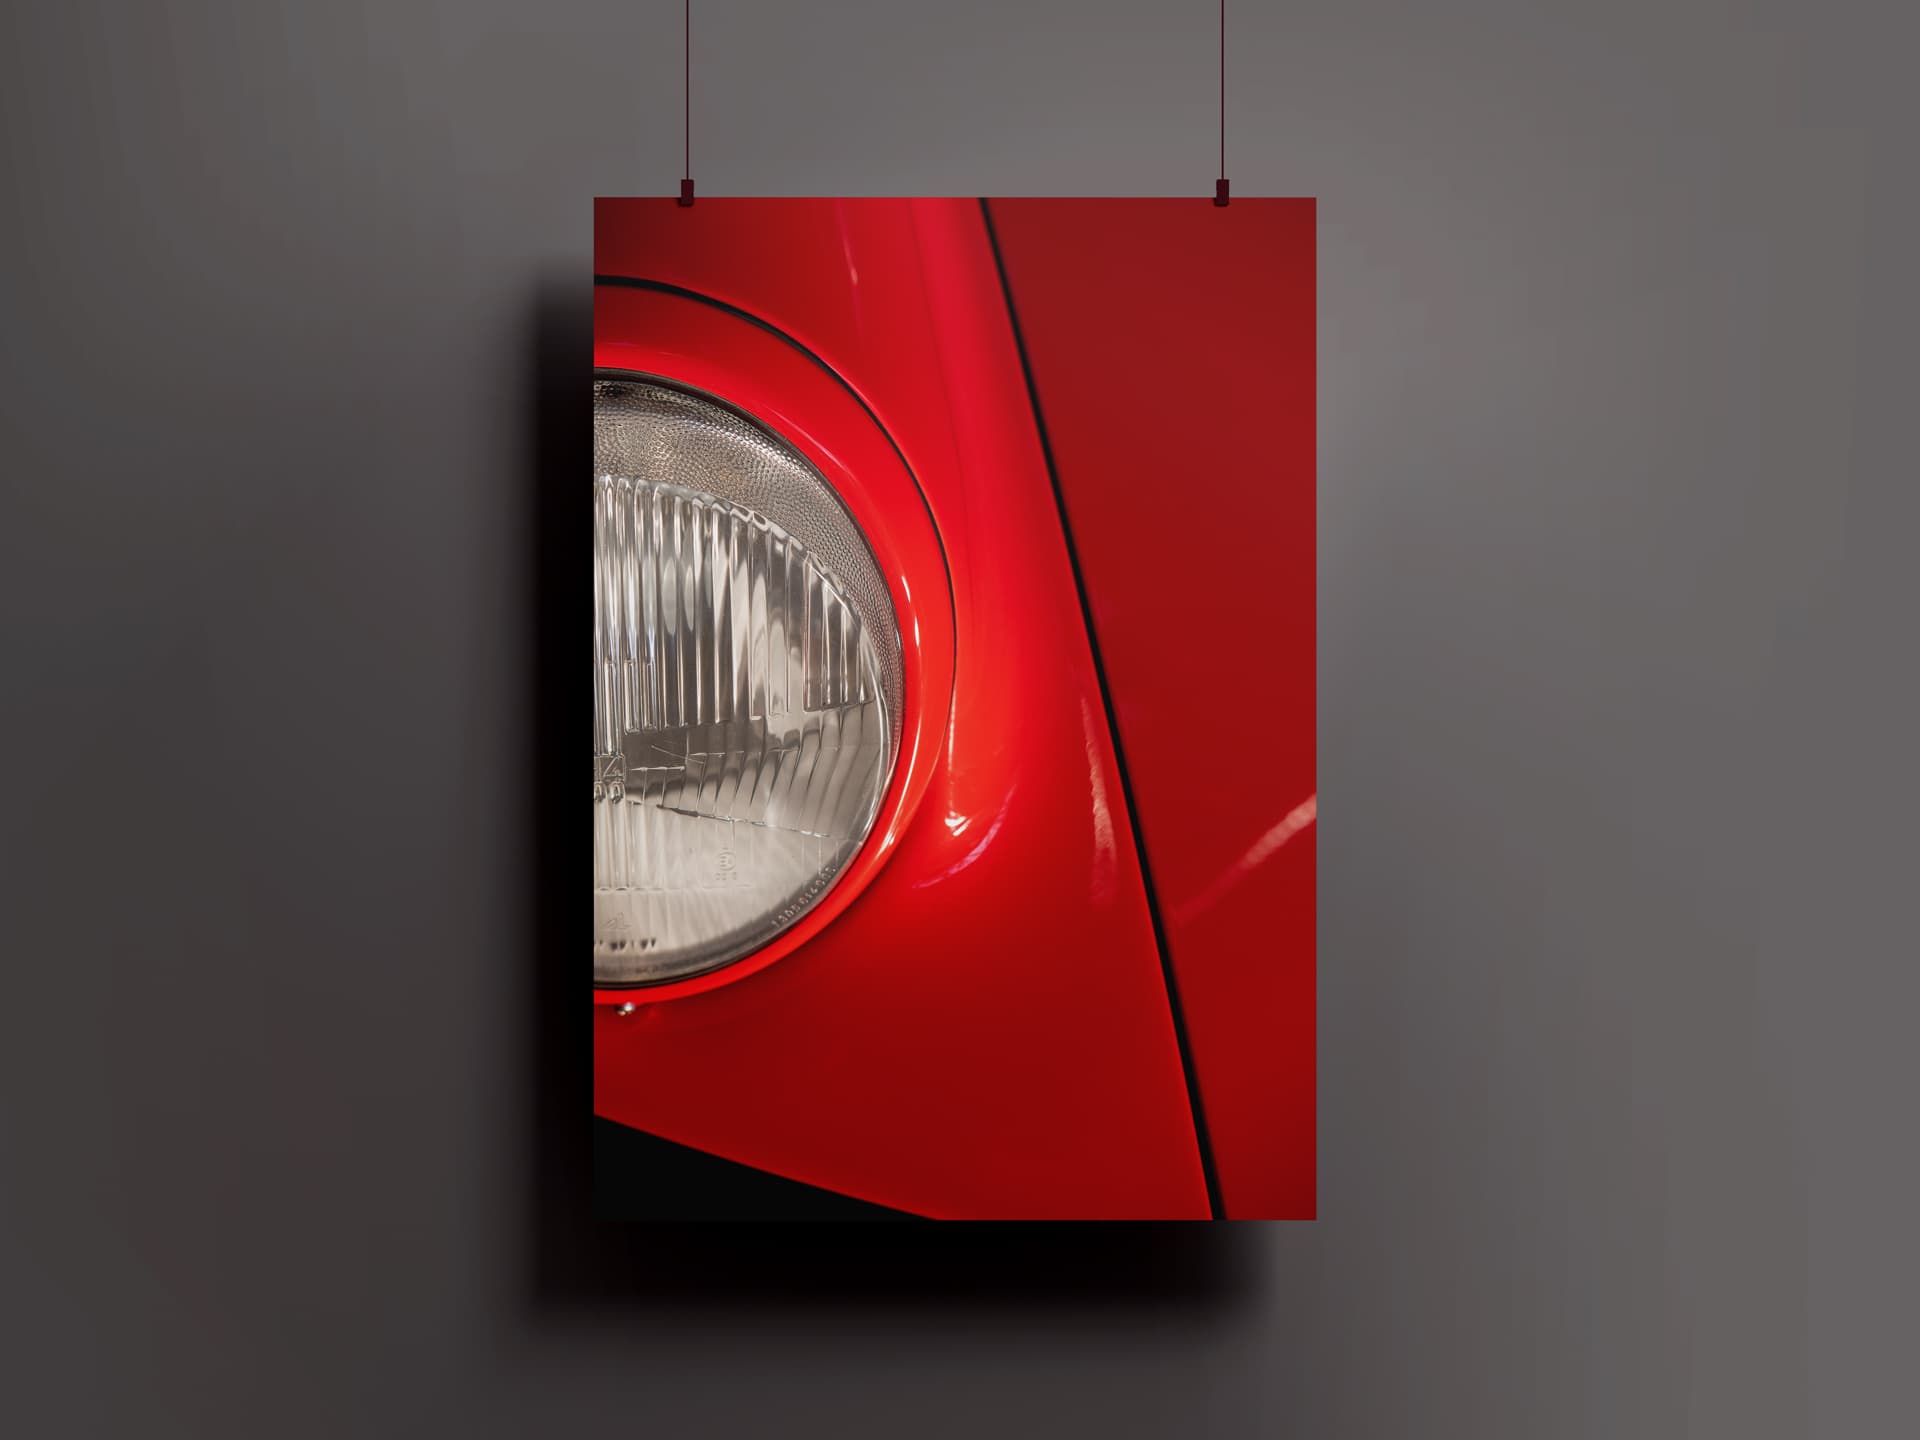 Die bekannte Frontansicht des Porsche 911 G von Fullframecar in rot gezeigt also hängendes Poster.